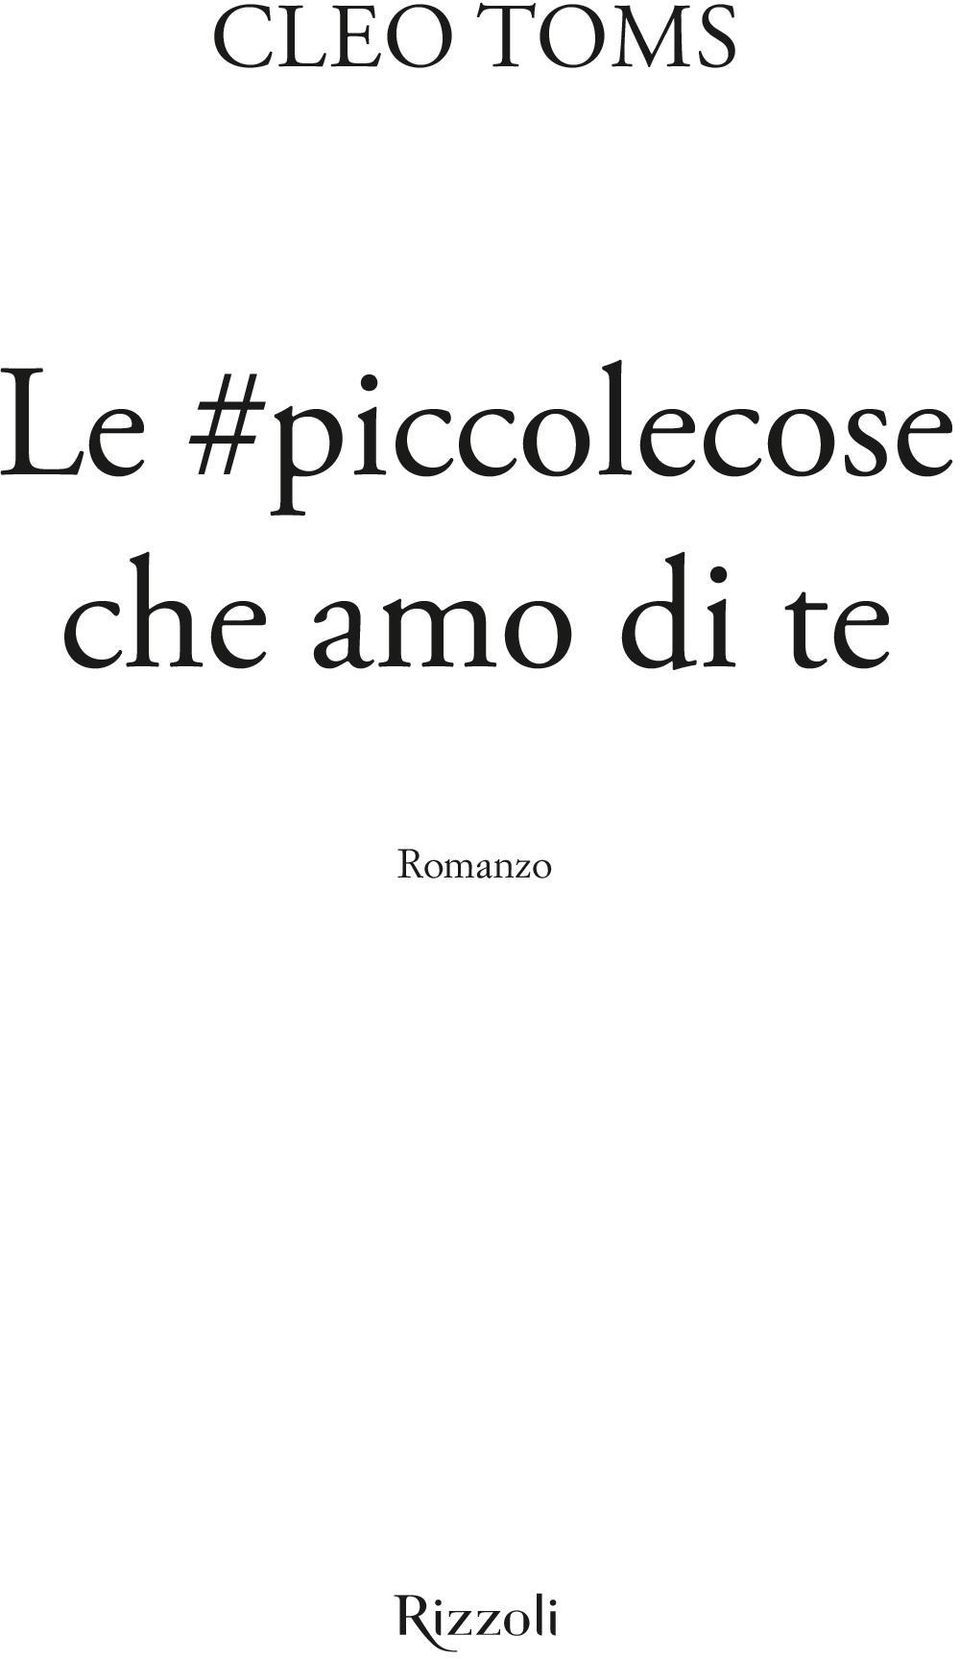 #piccocose